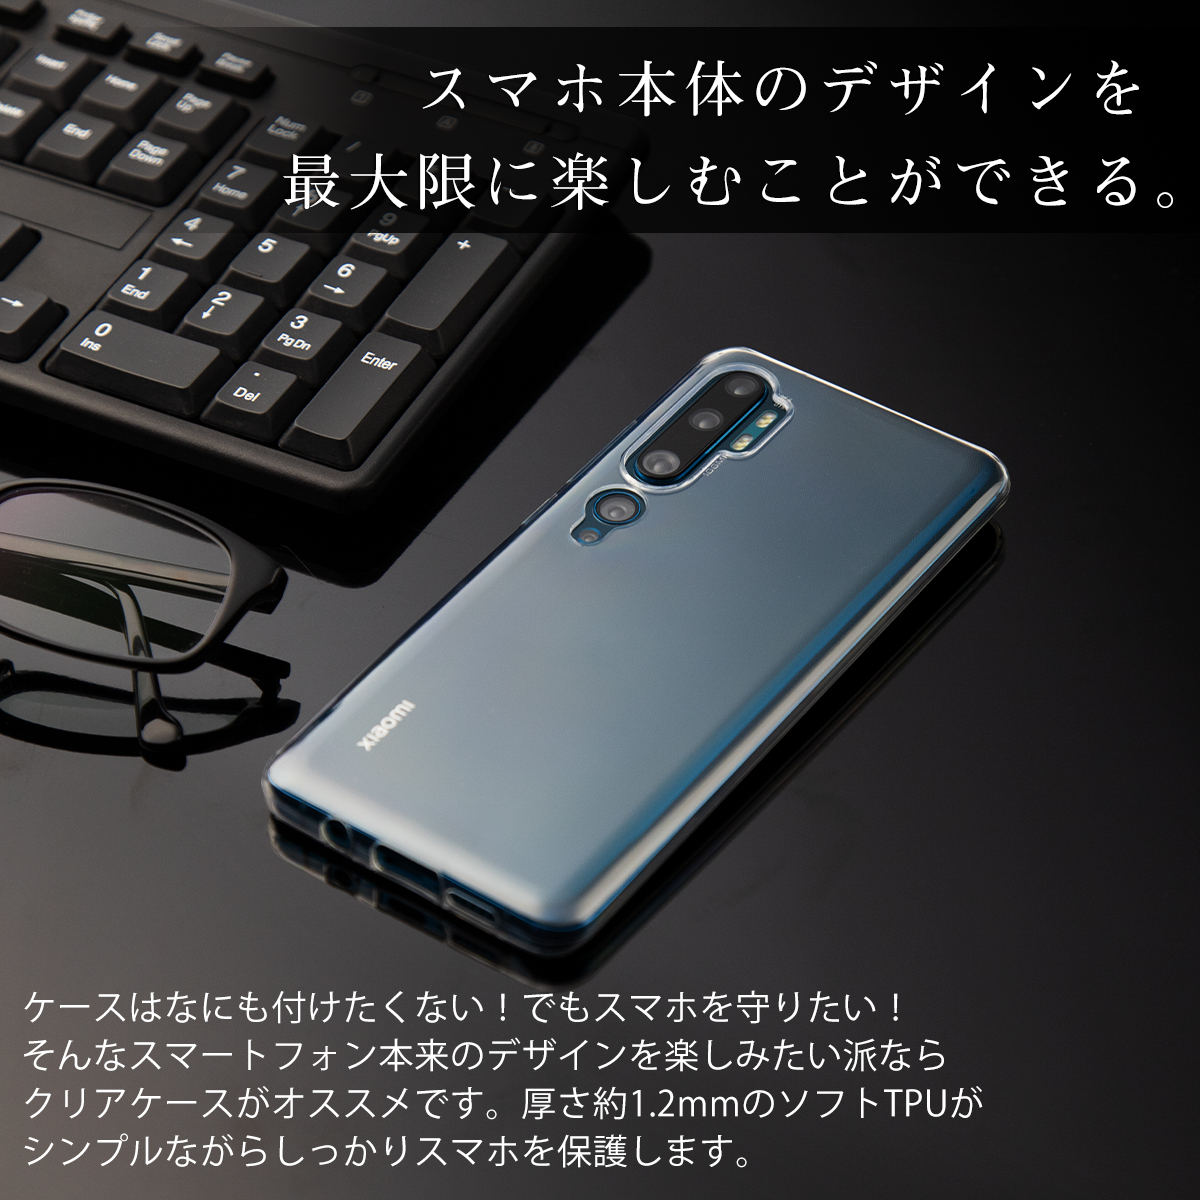 楽天市場 Xiaomi Mi Note 10 スマホケース 韓国 スマホ カバー Tpu クリアケース 人気 おすすめ シンプル かっこいい かわいい シャオミー イニシャル 名入れ 名入れスマホケースエックスモール